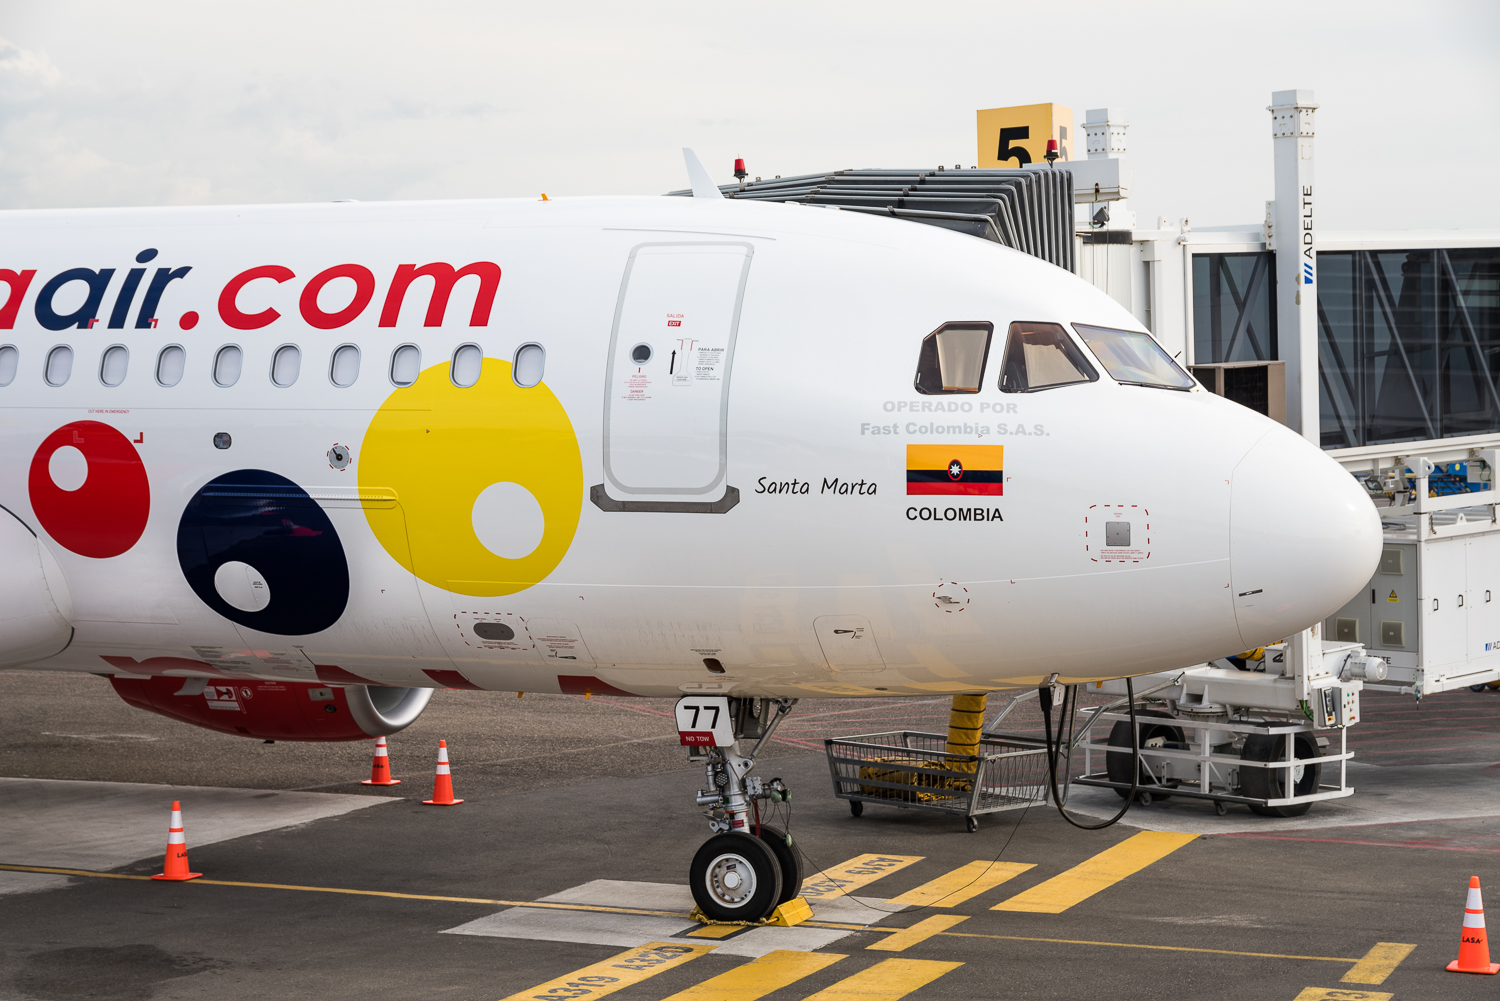 Aerolínea Viva Air es reconocida como la flota más joven de Colombia